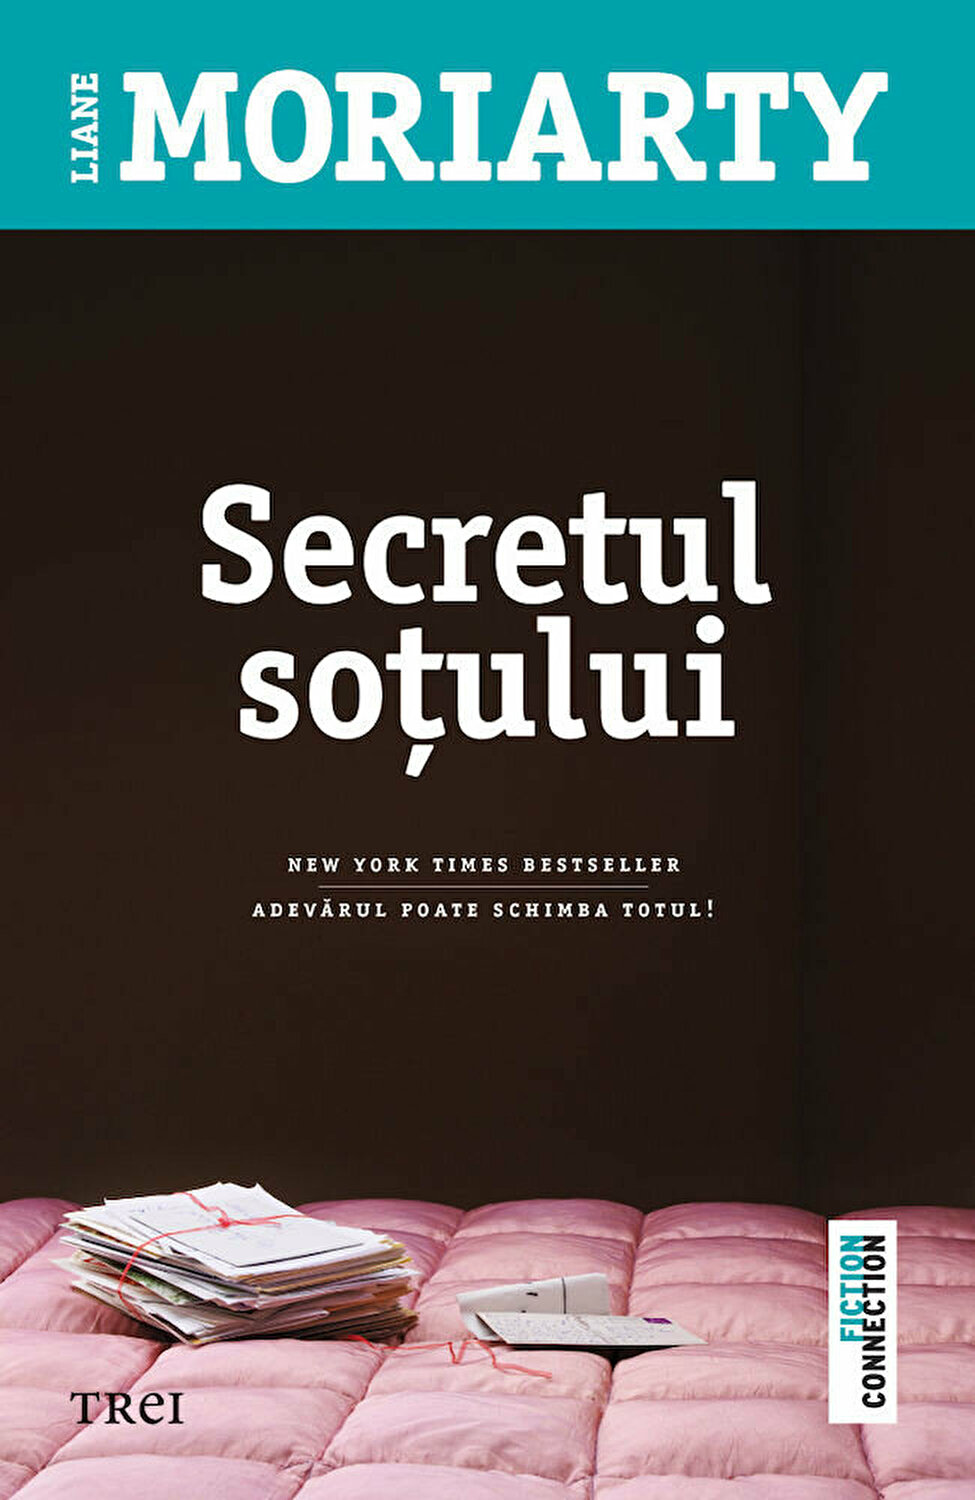 Coperta cărții: Secretul sotului - lonnieyoungblood.com